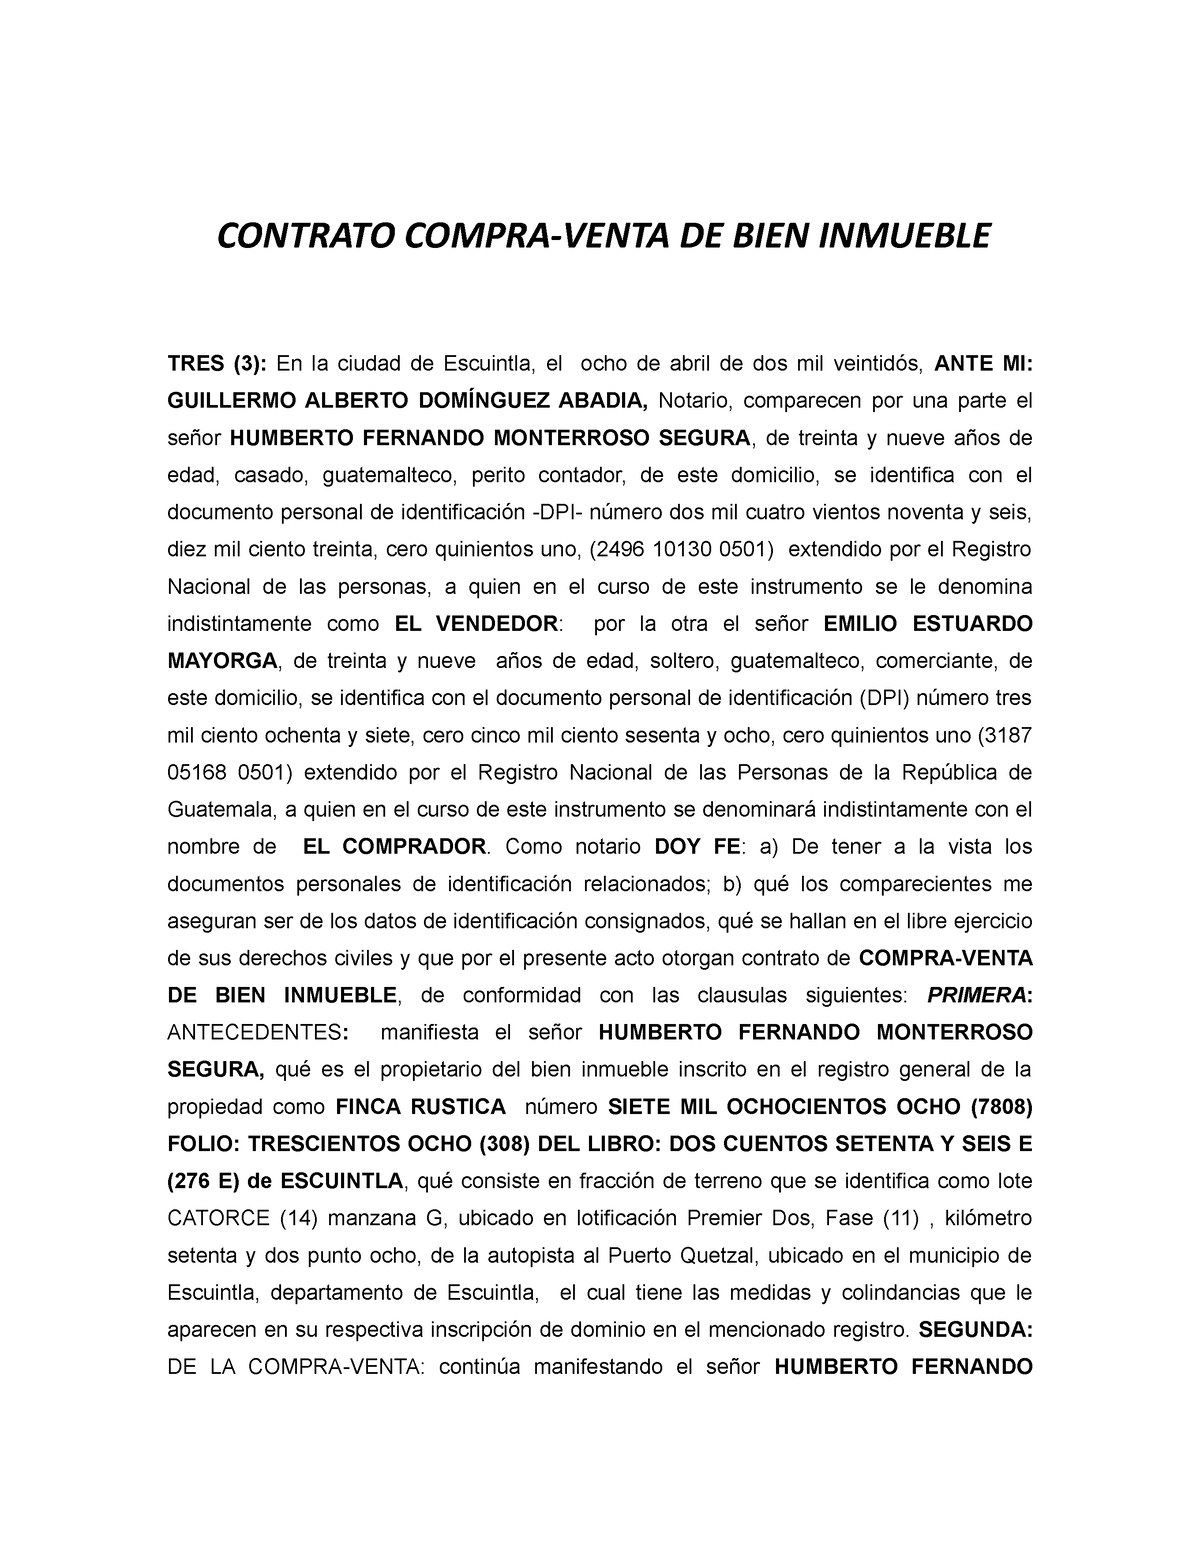 Contrato De Compra Venta De Bien Inmueble Civil V Contrato Compra Venta De Bien Inmueble Tres 0209